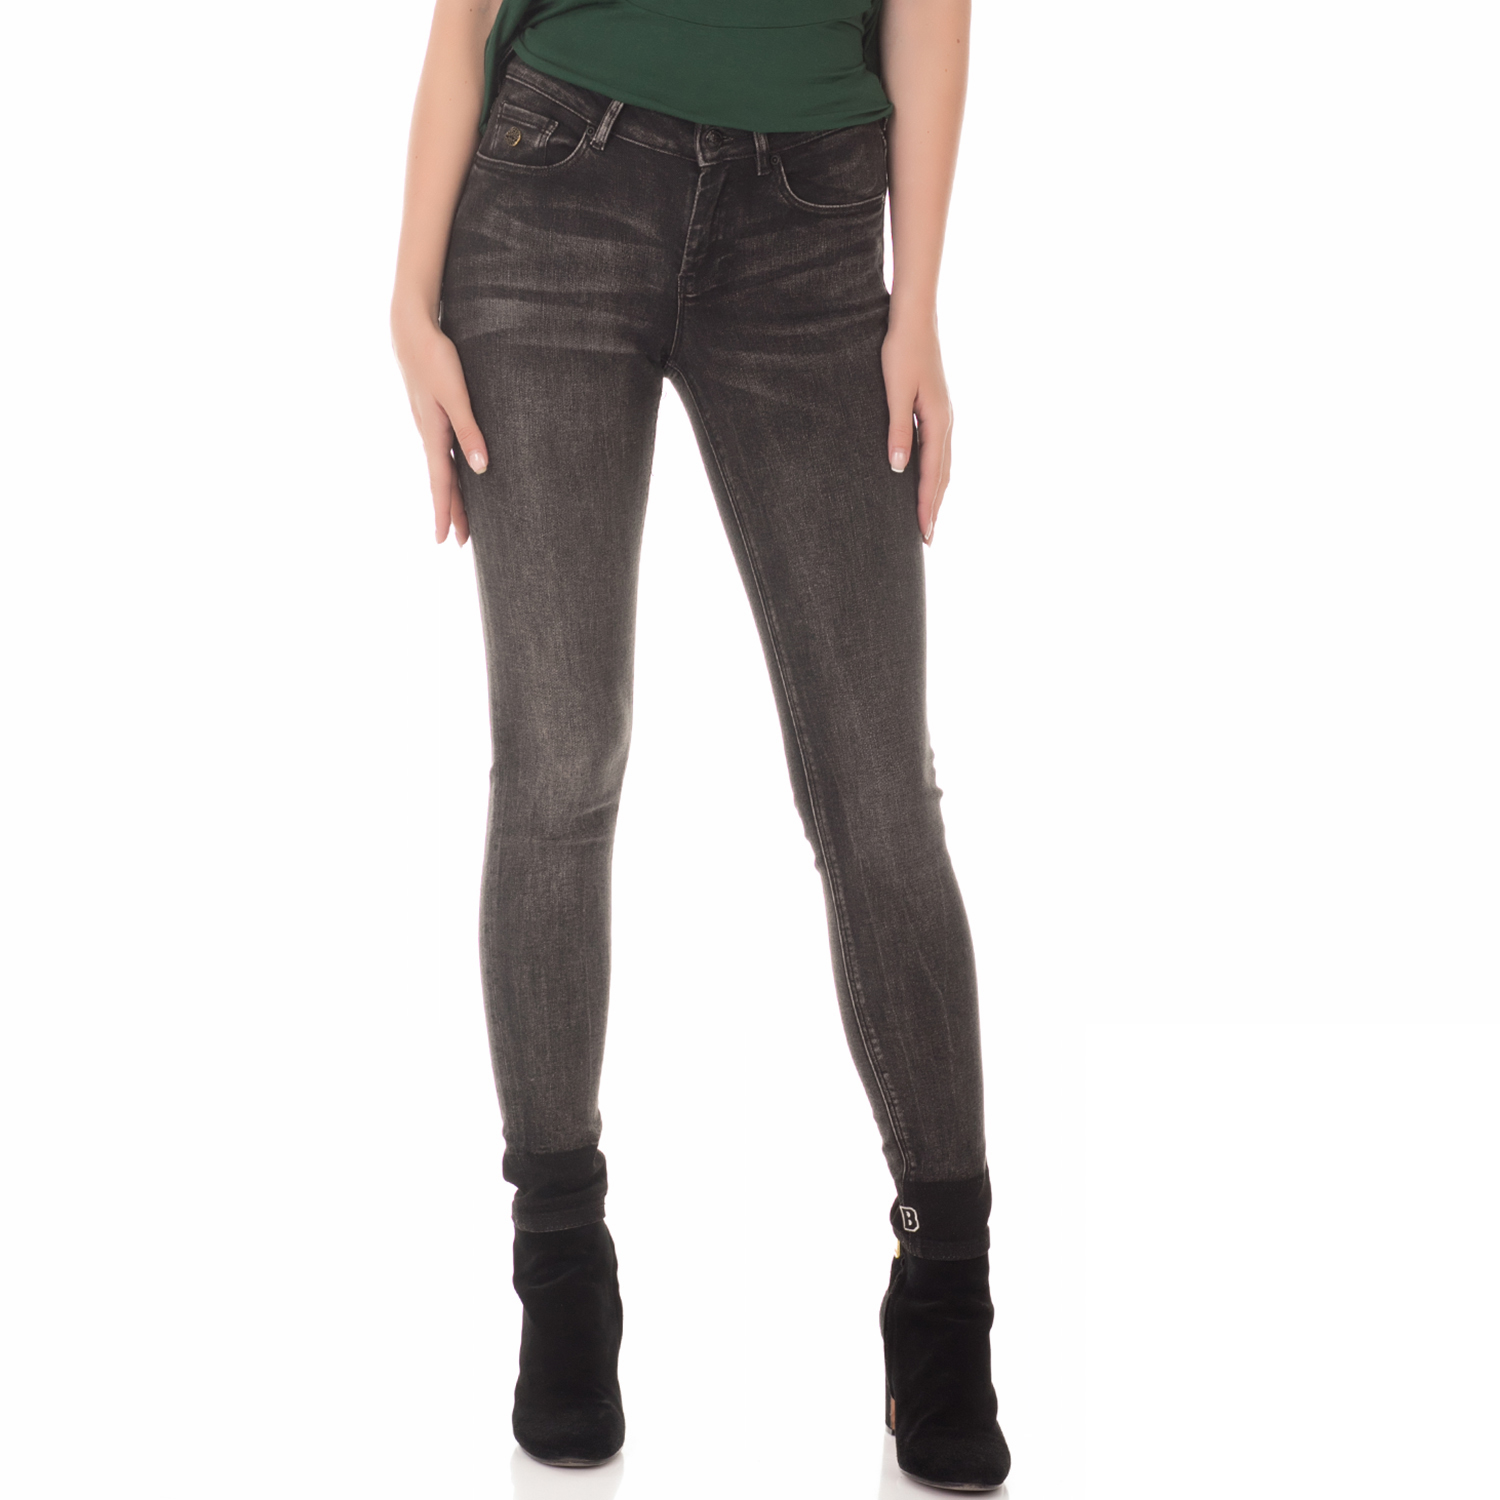 Γυναικεία/Ρούχα/Τζίν/Skinny SCOTCH & SODA - Γυναικείο jean παντελόνι SCOTCH & SODA La Bohemienne cropped - Pitch μαύρο